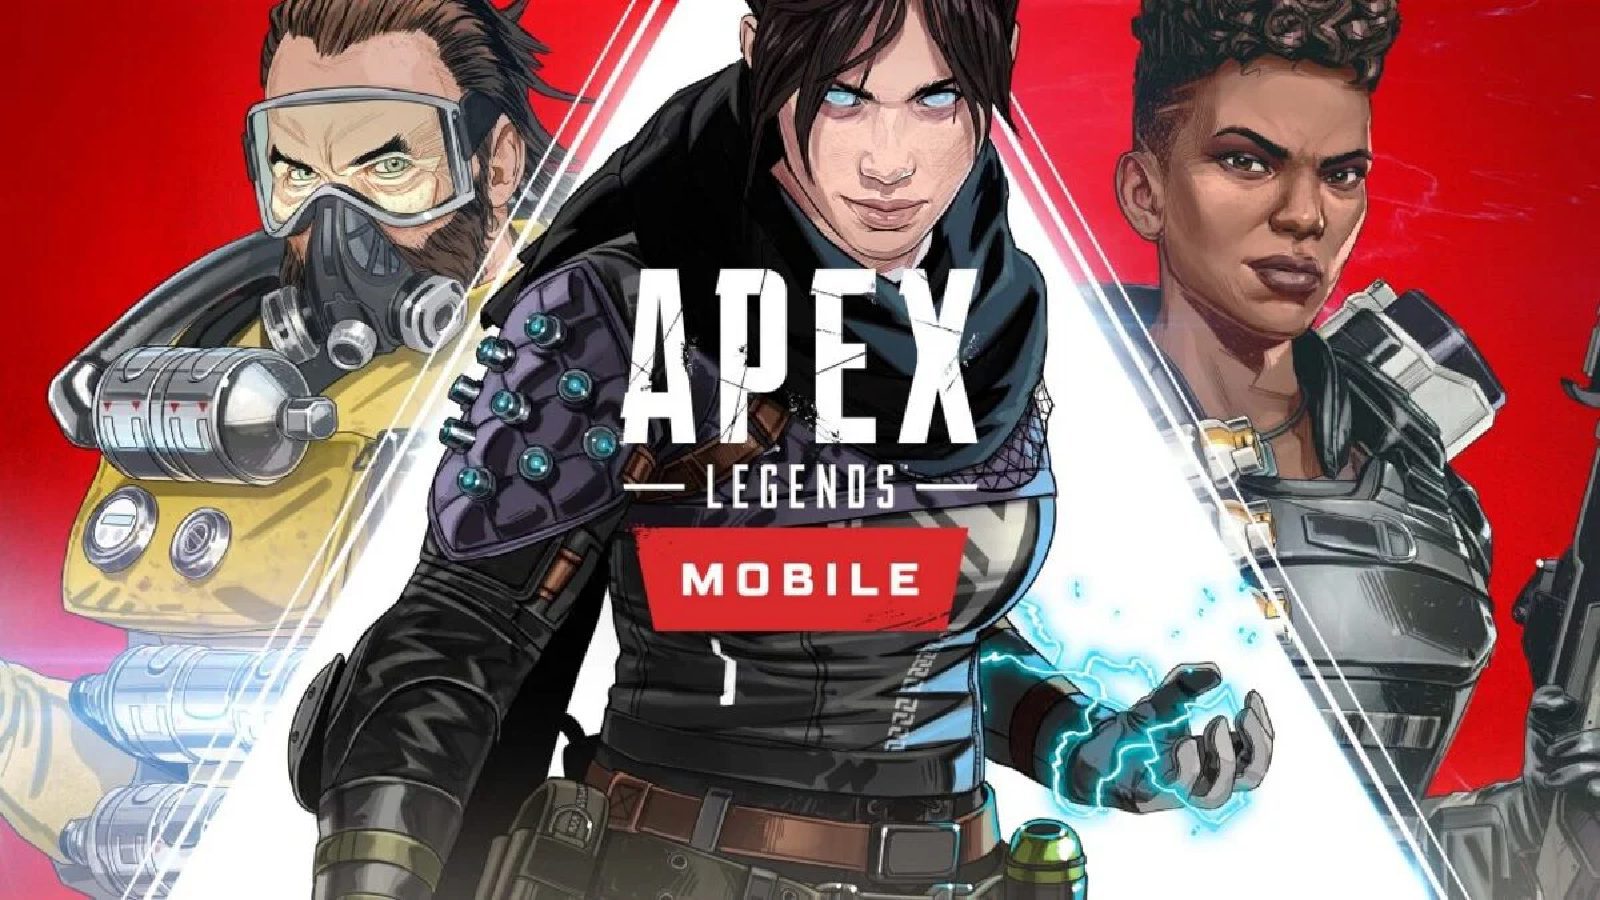 Мобильная версия Apex Legends: как скачать, новый персонаж Fade, дата выхода и многое другое